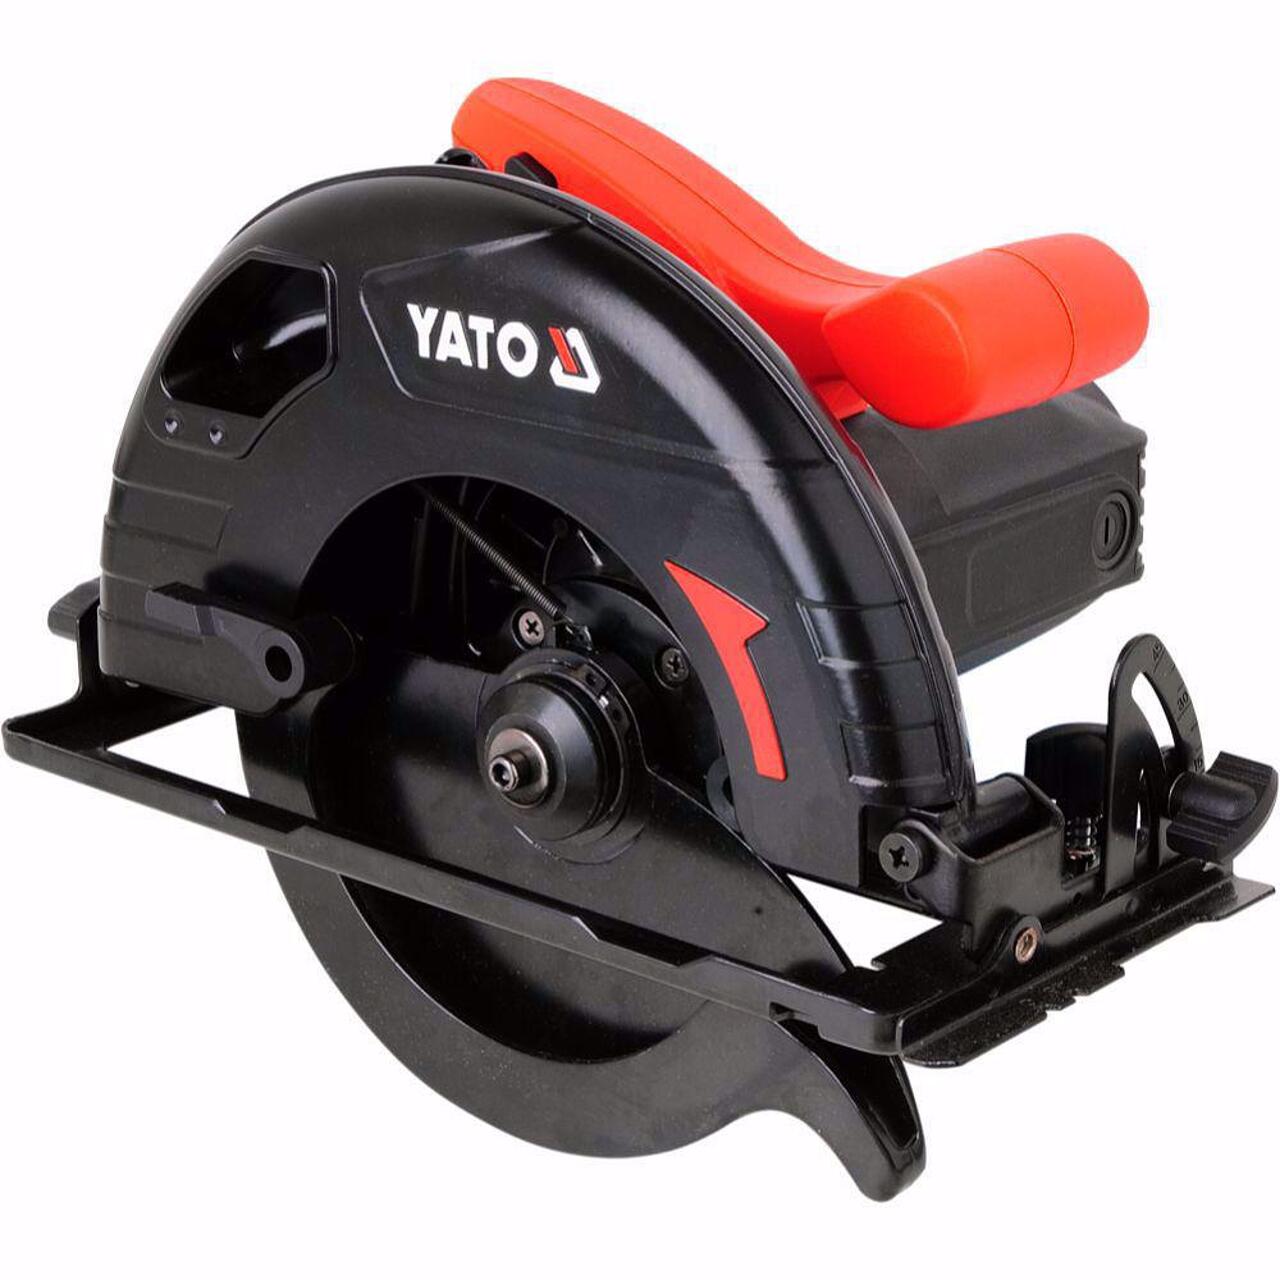 Ръчен циркуляр YATO YT 82150, диск 190 мм, 1300 W